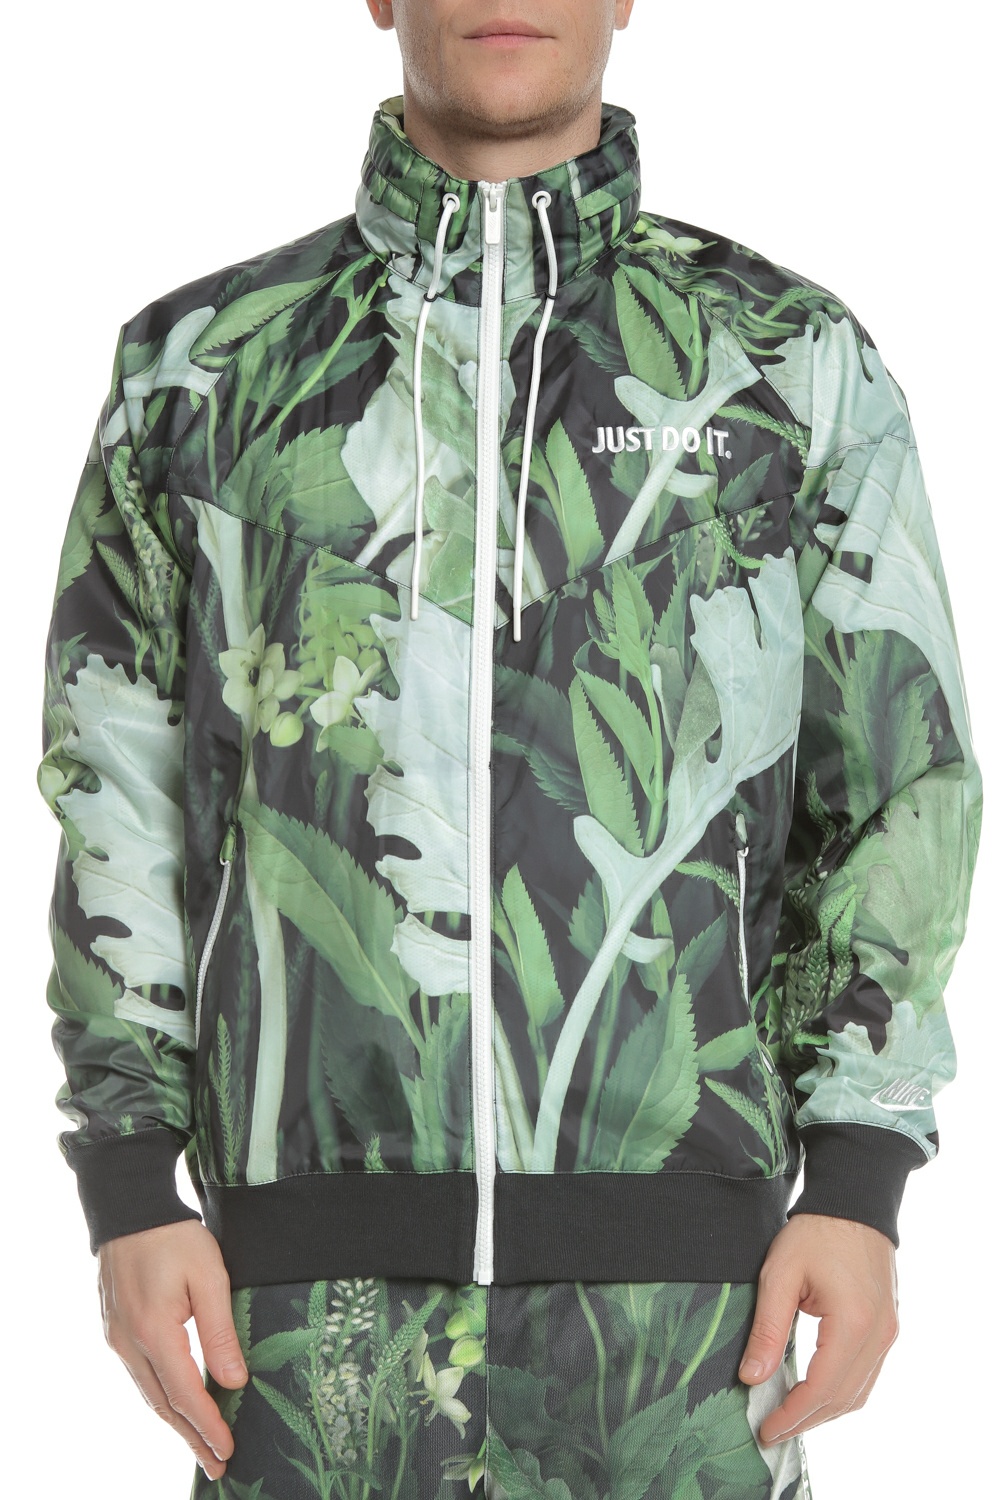 Ανδρικά/Ρούχα/Πανωφόρια/Τζάκετς NIKE - Ανδρικό jacket NSW JDI WR JKT WVN FLORL πράσινο